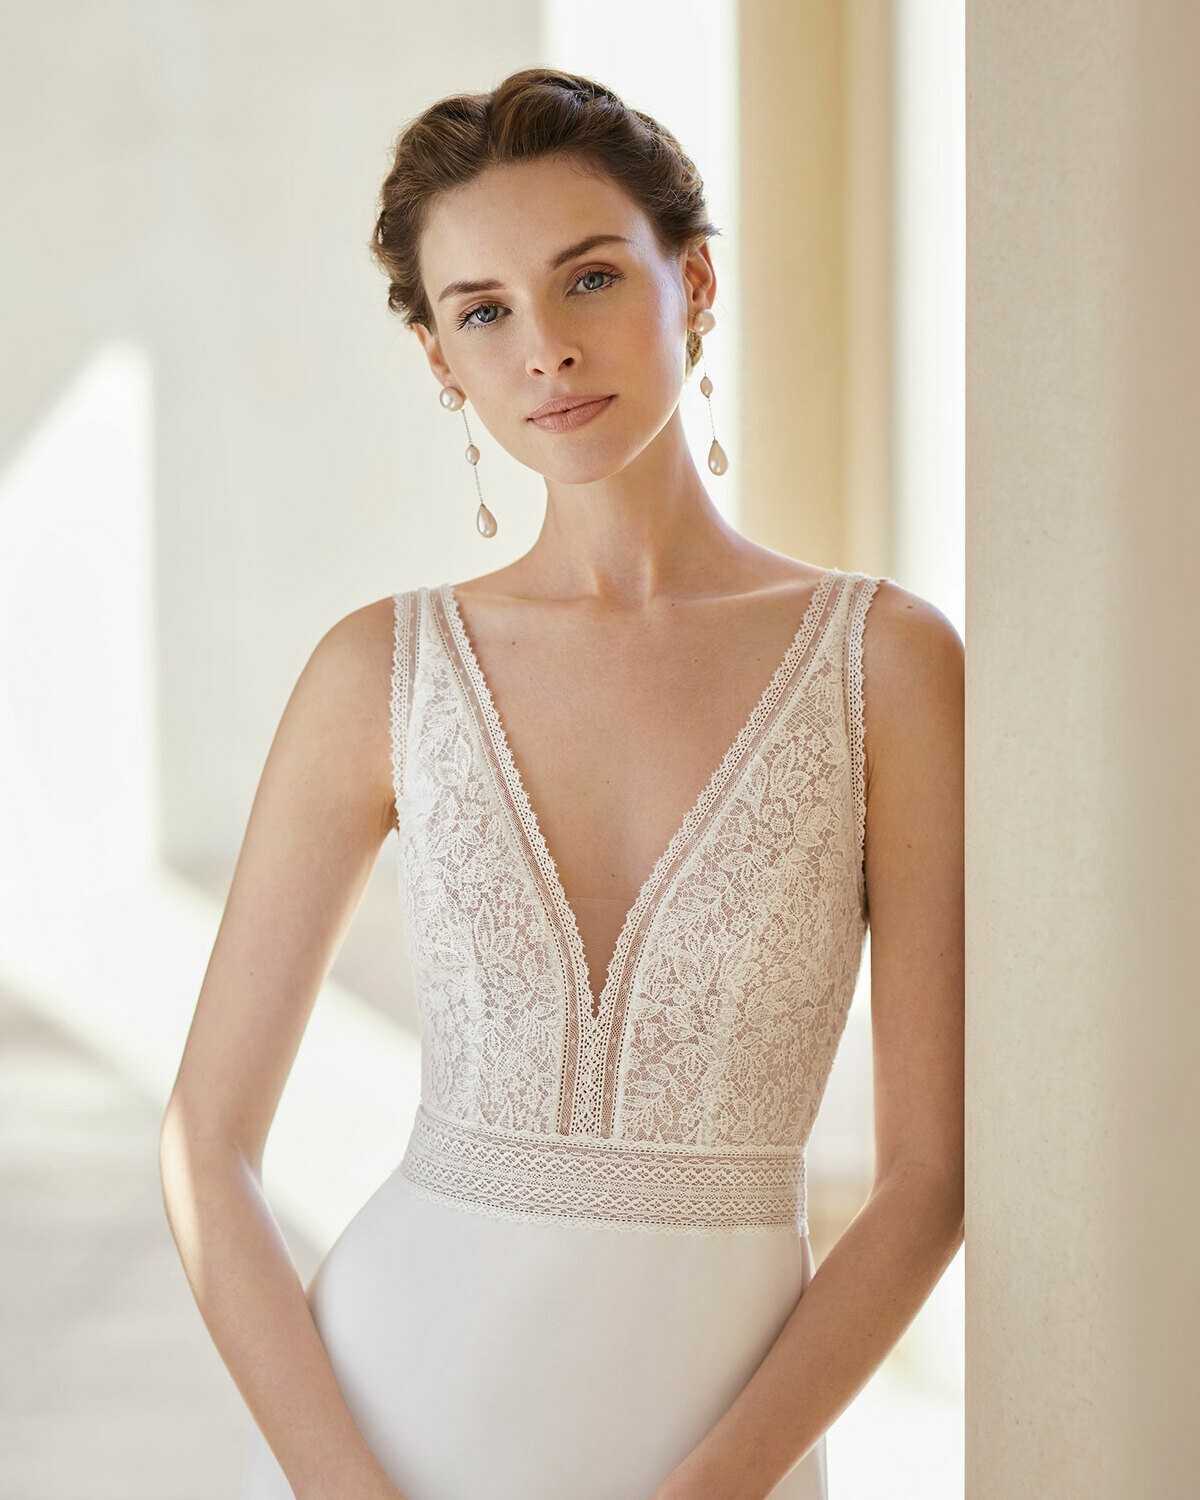 SALCEDA - abito da sposa collezione 2020 - Rosa Clarà Couture